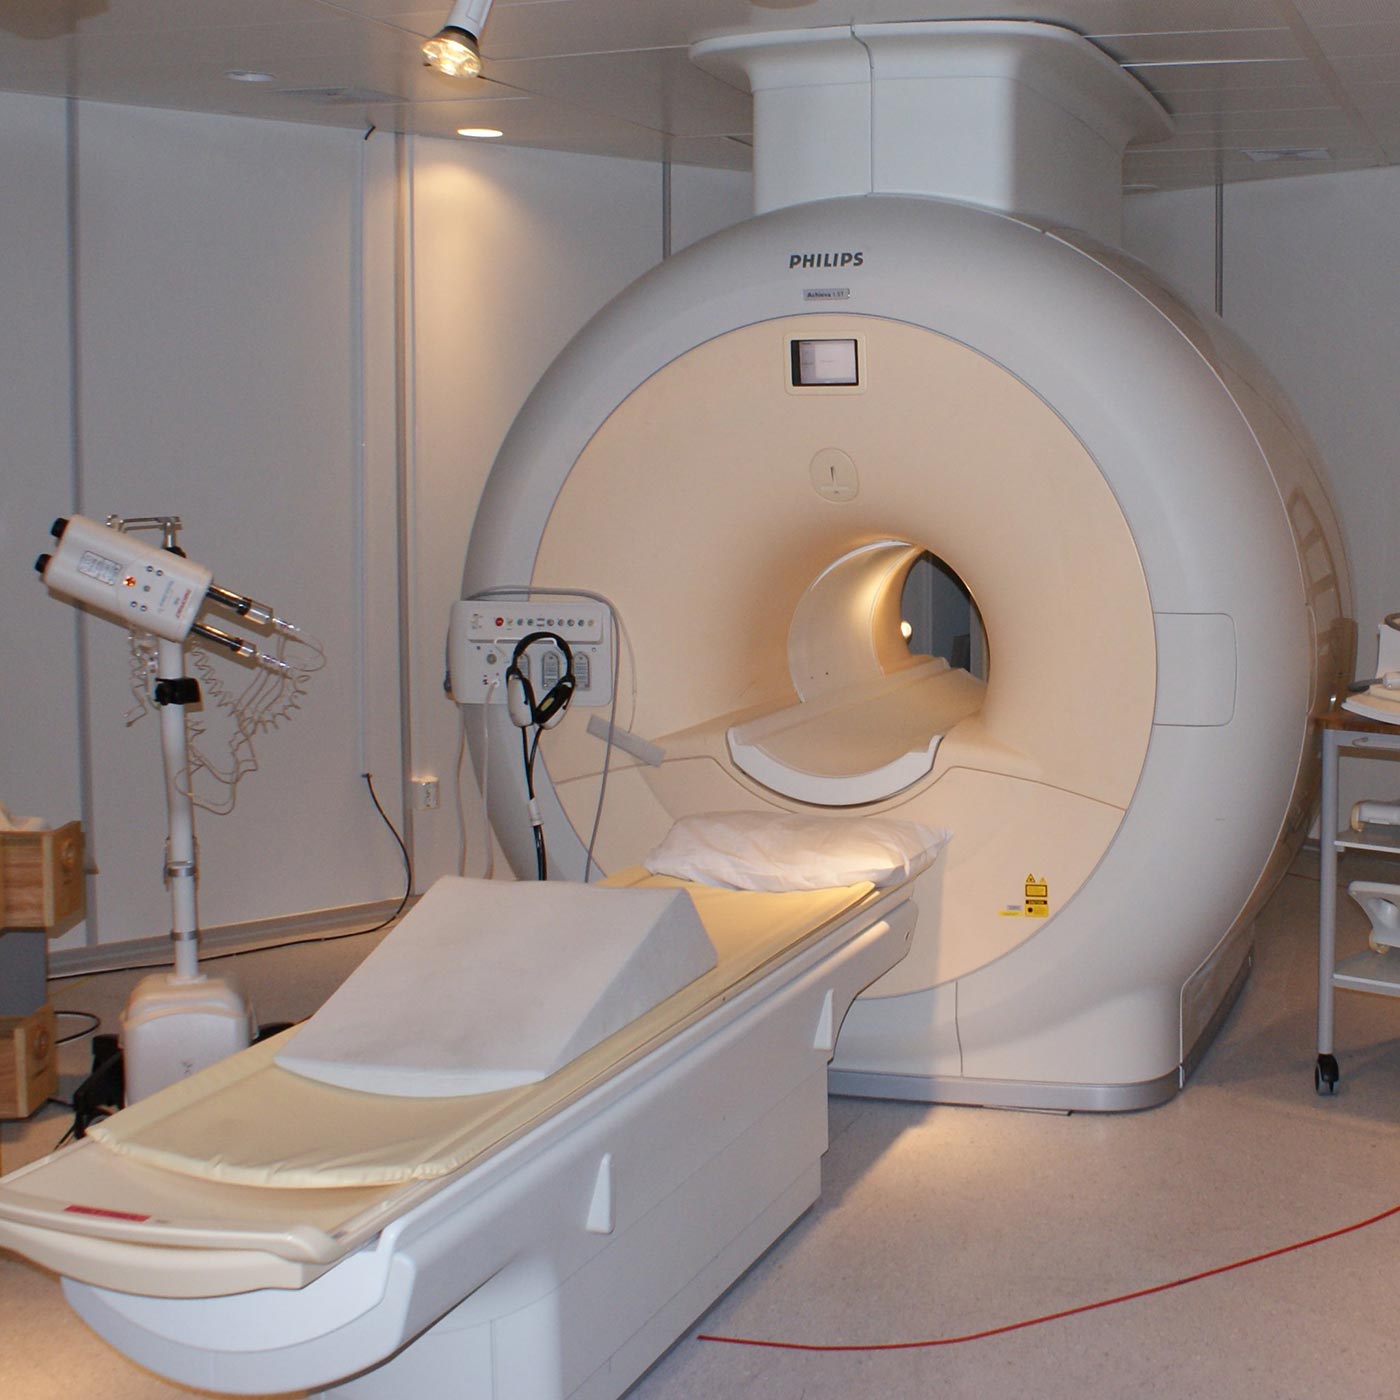 appareil de scanner IRM du centre d'imagerie médicale de Thiais